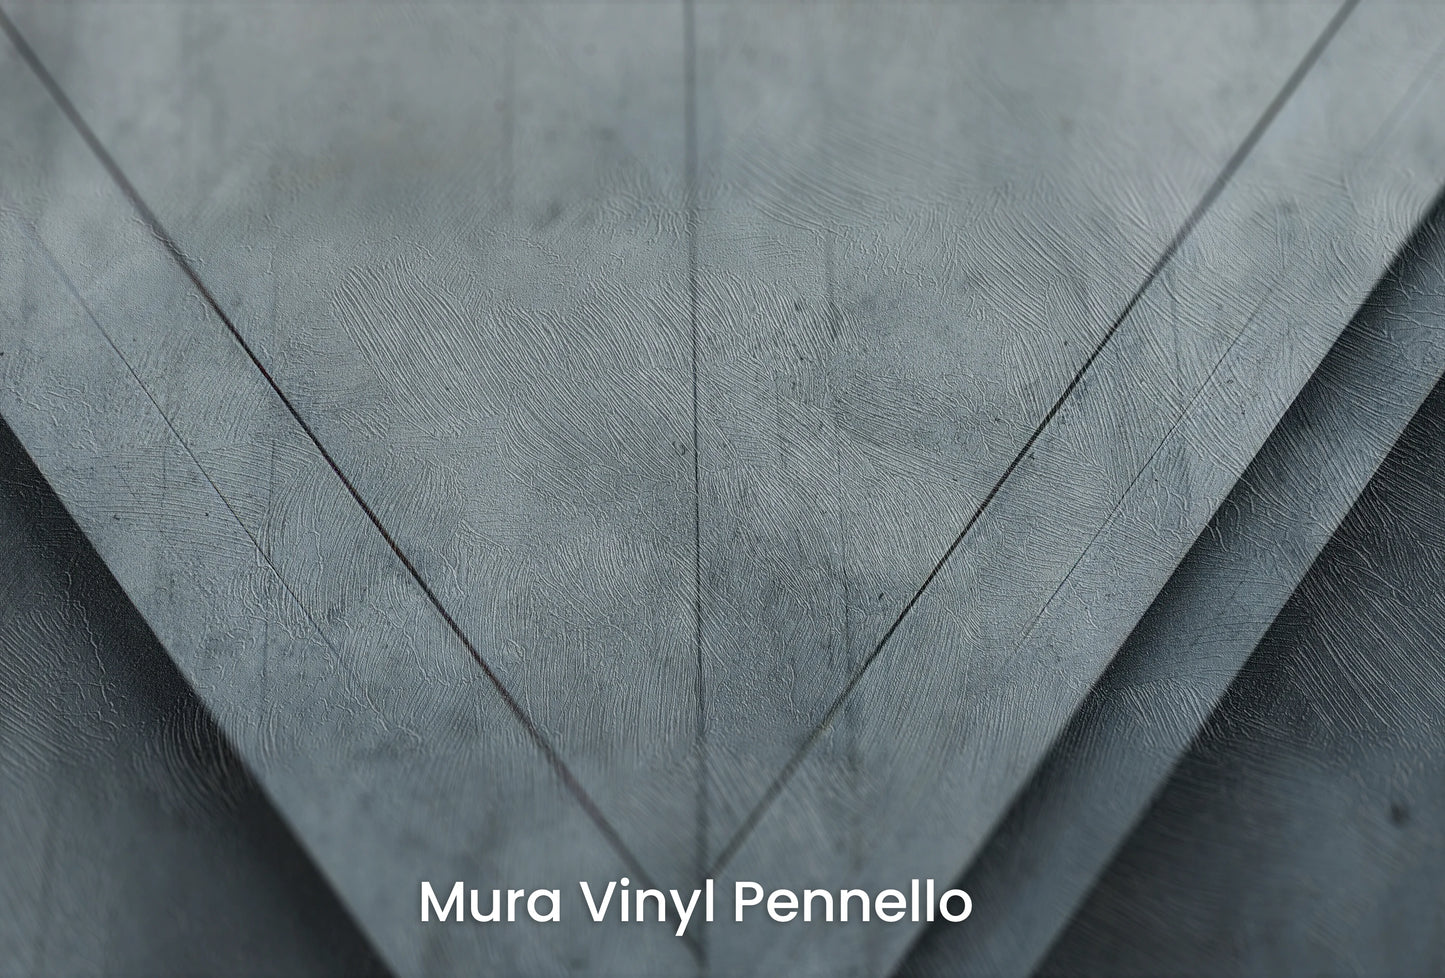 Zbliżenie na artystyczną fototapetę o nazwie Architectural Play na podłożu Mura Vinyl Pennello - faktura pociągnięć pędzla malarskiego.